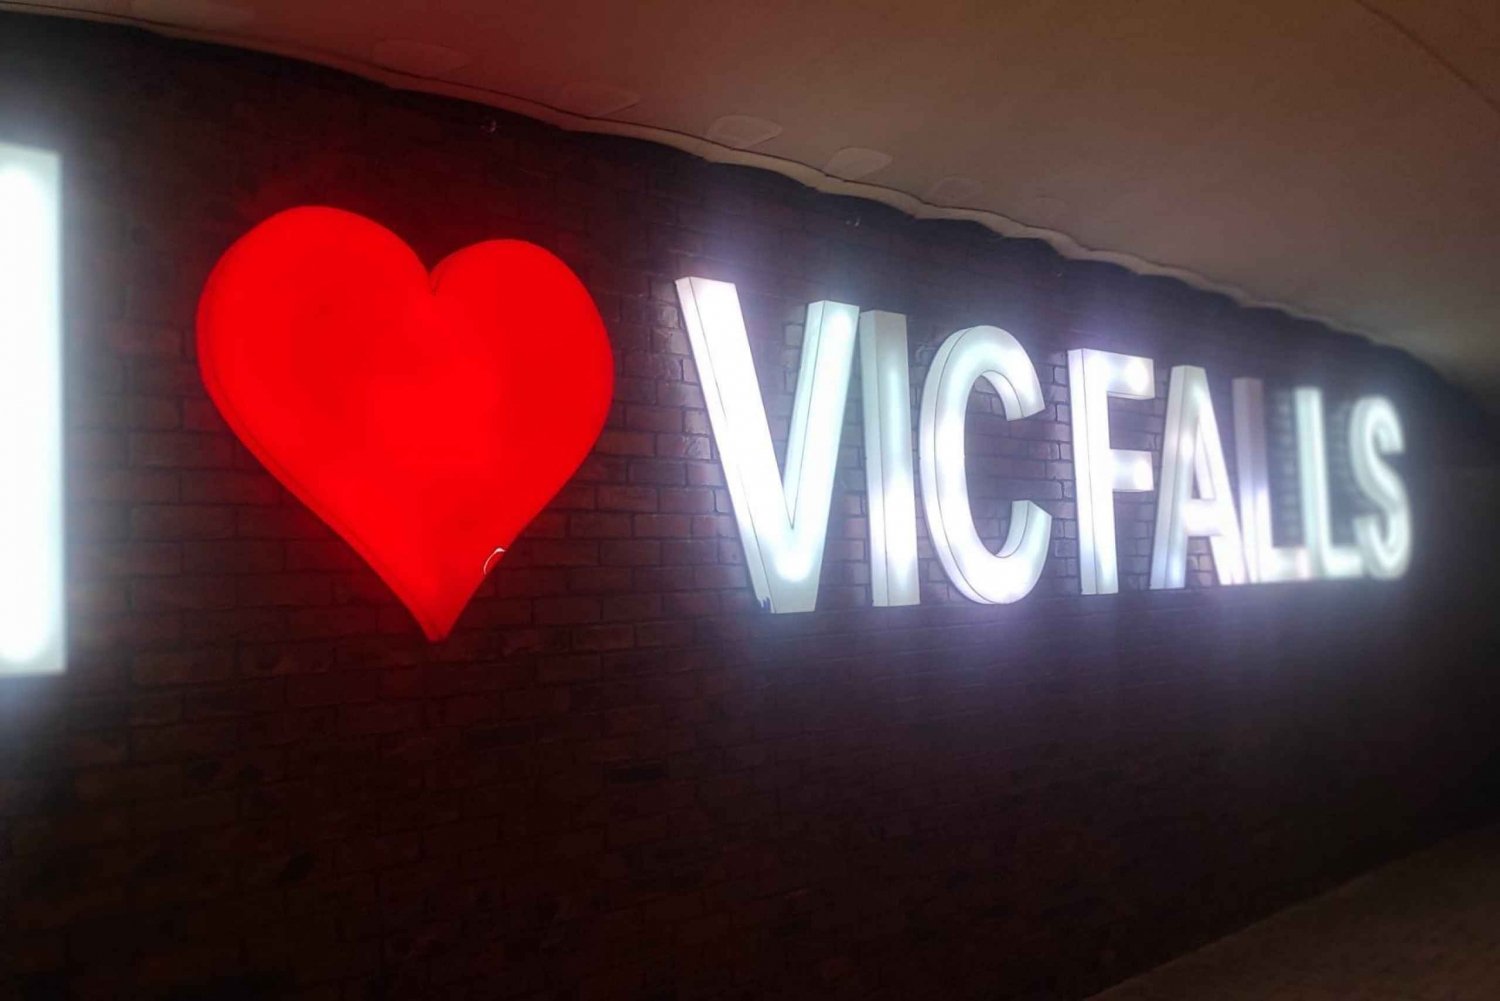 Victoria Falls : Safari 4x4 dans la ville de Victoria Falls